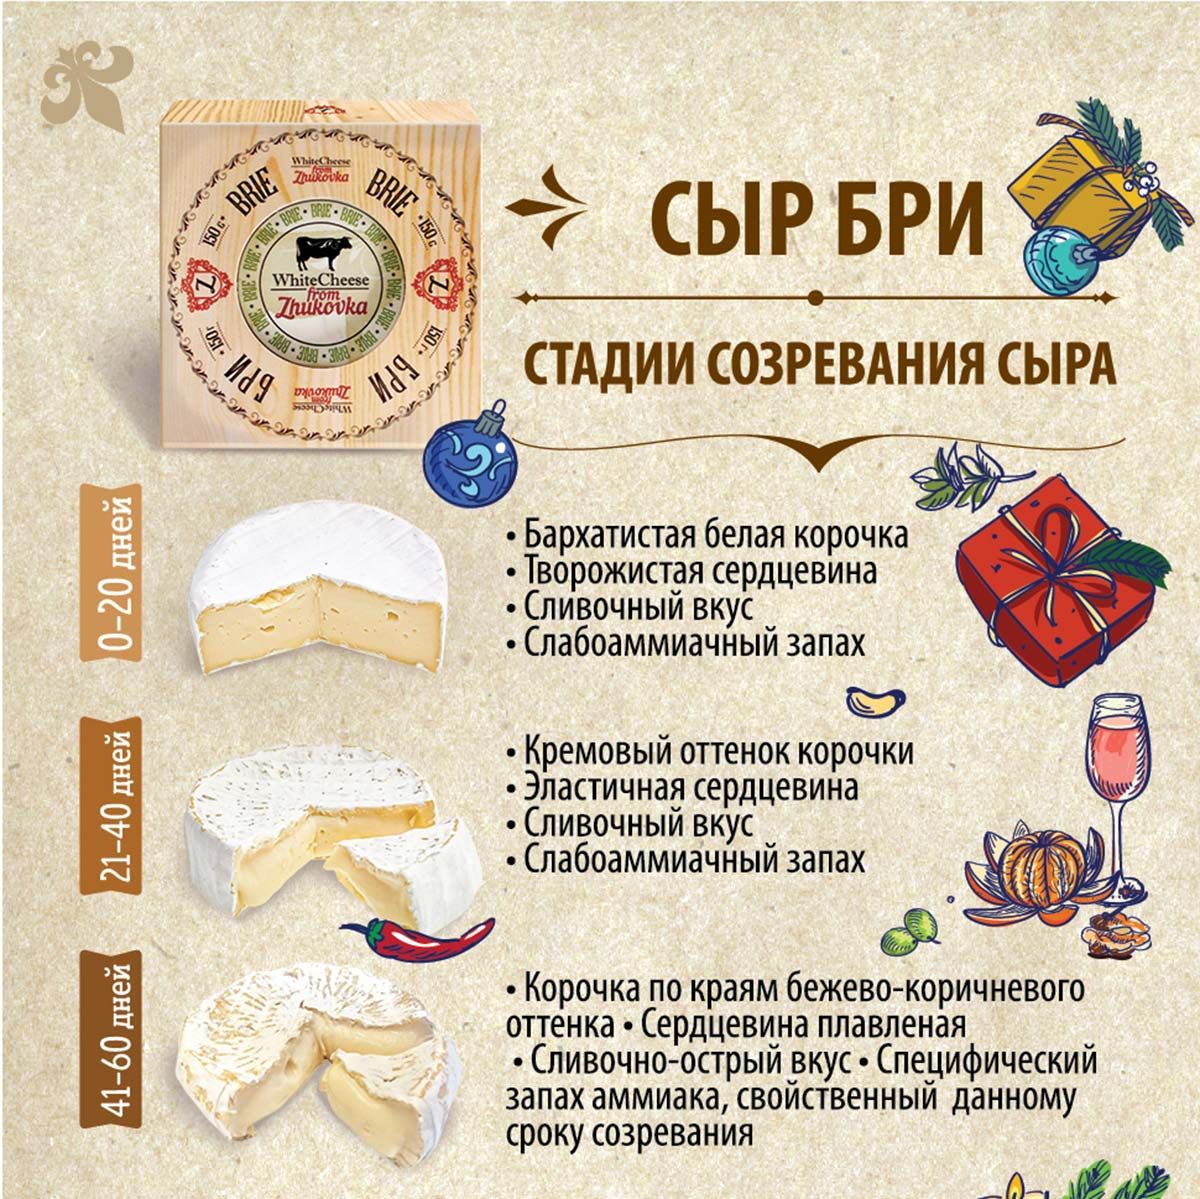 2 дня до Нового года с самым вкусным сыром от White Cheese from Zhukovka